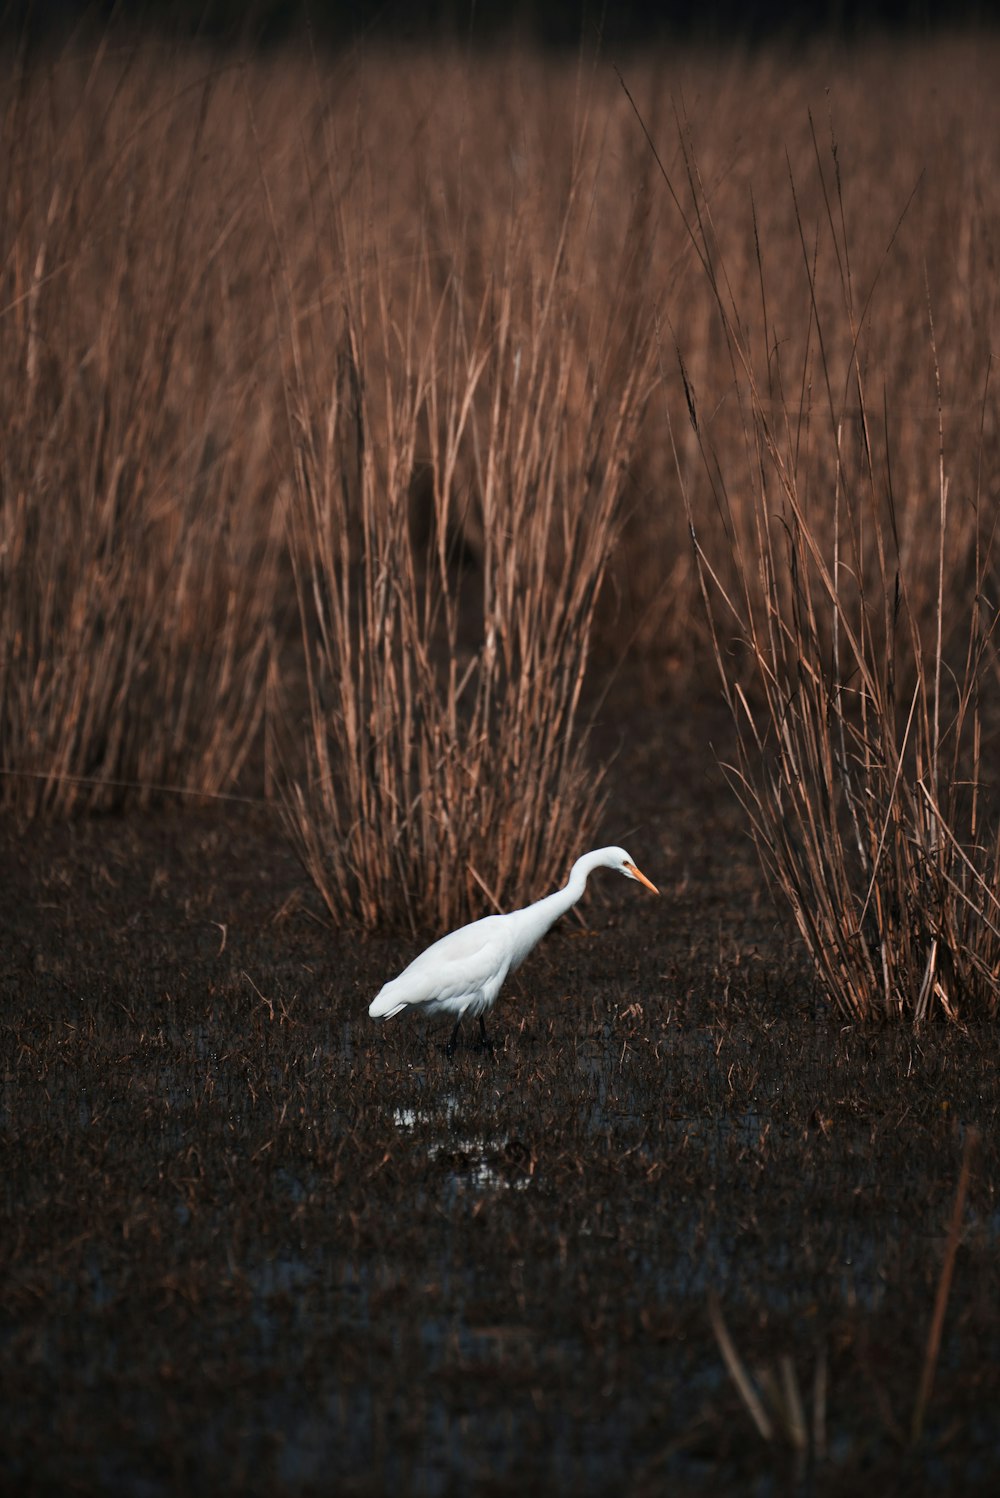 pássaro branco voando sobre o campo de grama marrom durante o dia